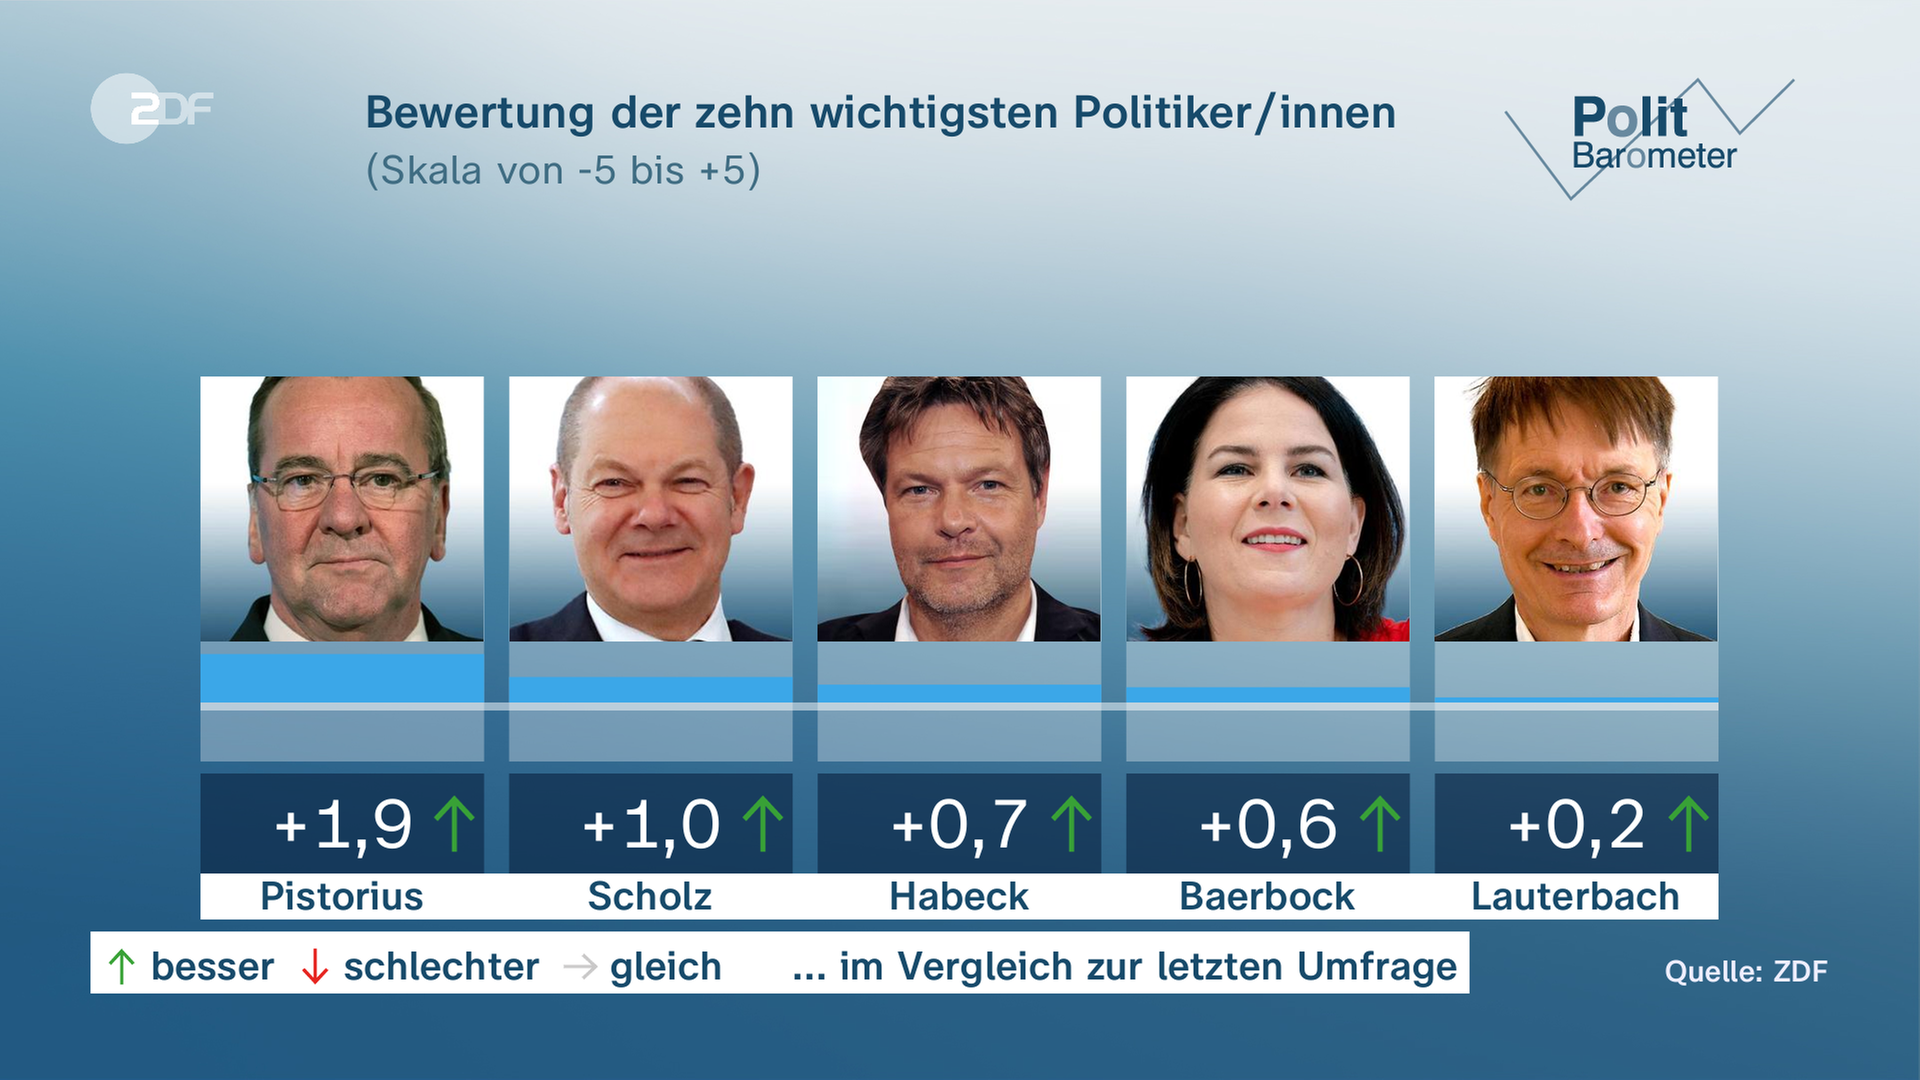 Politbarometer 17.03.2023, Bewertung der zehn wichtigsten Politiker/innen